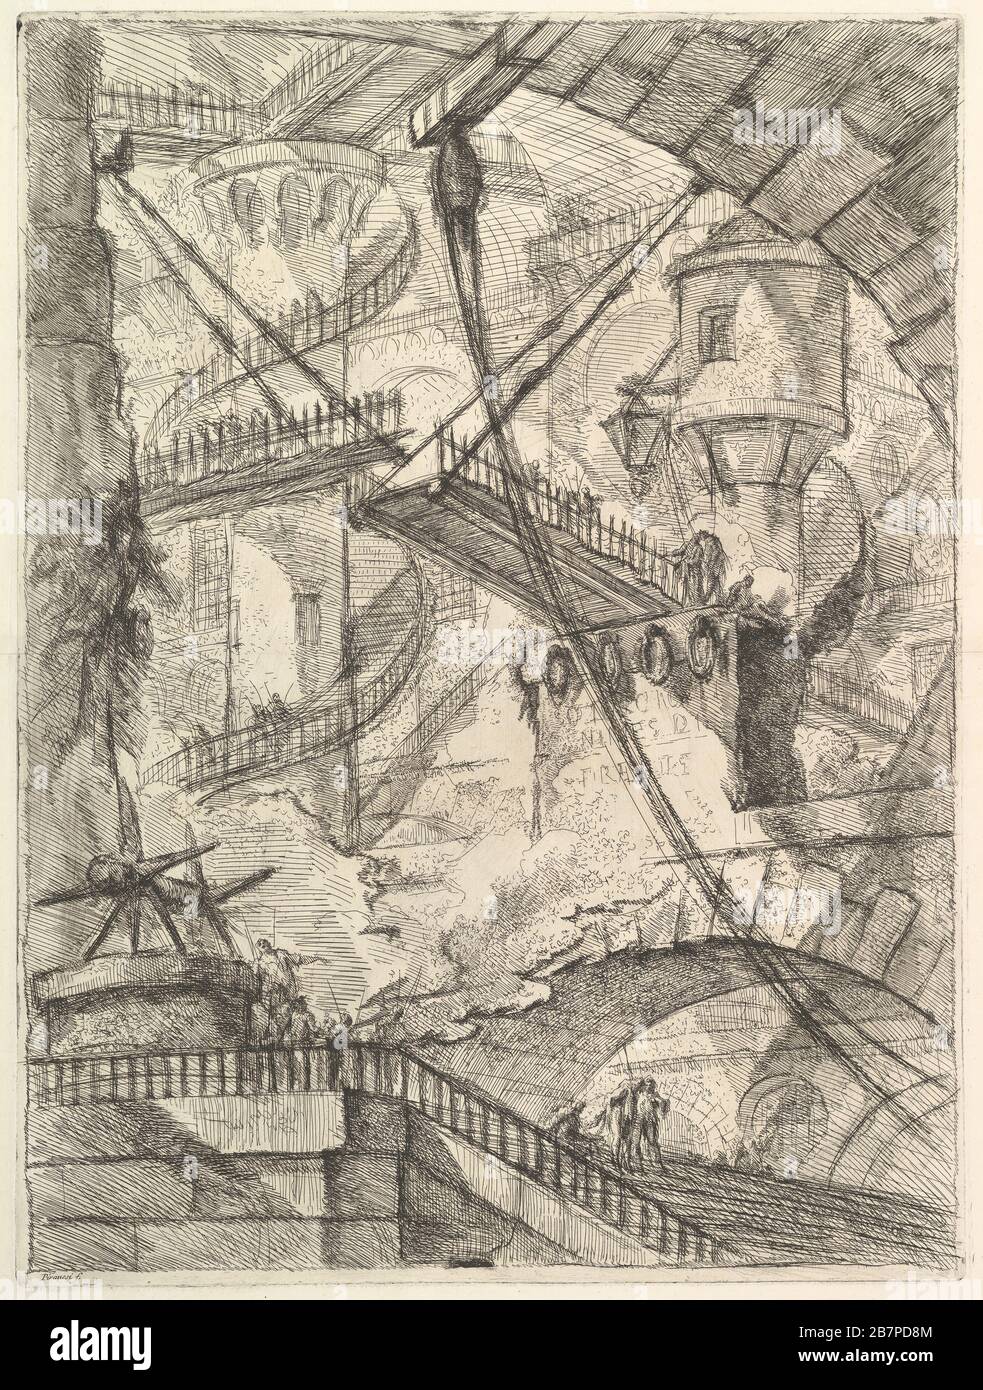 The Drawbridge, from Carceri d'invenzione (Imaginary Prisons), ca. 1749-50. Stock Photo